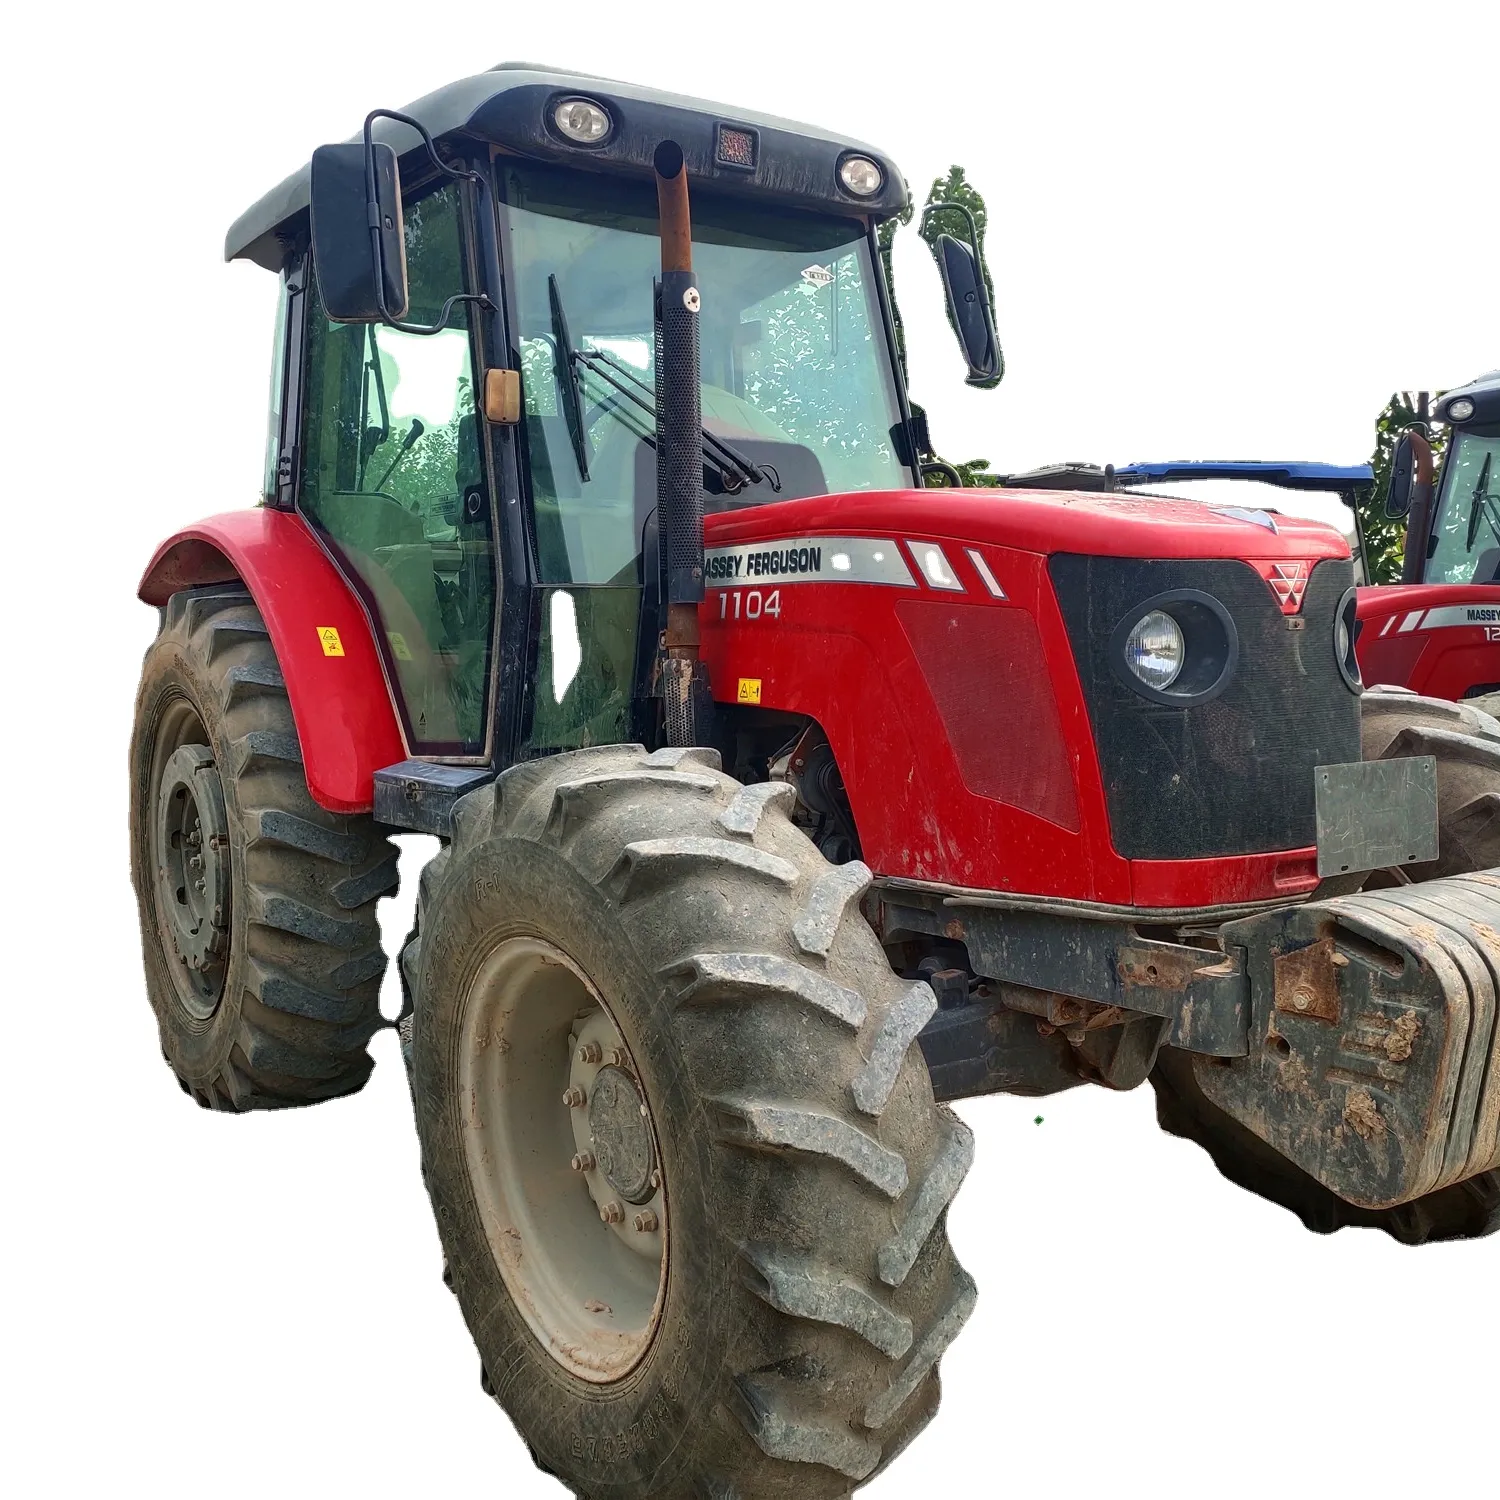 Tracteurs d'occasion de bonne qualité Massey ferguson MF1104 Machine agricole Tracteurs agricoles à vendre